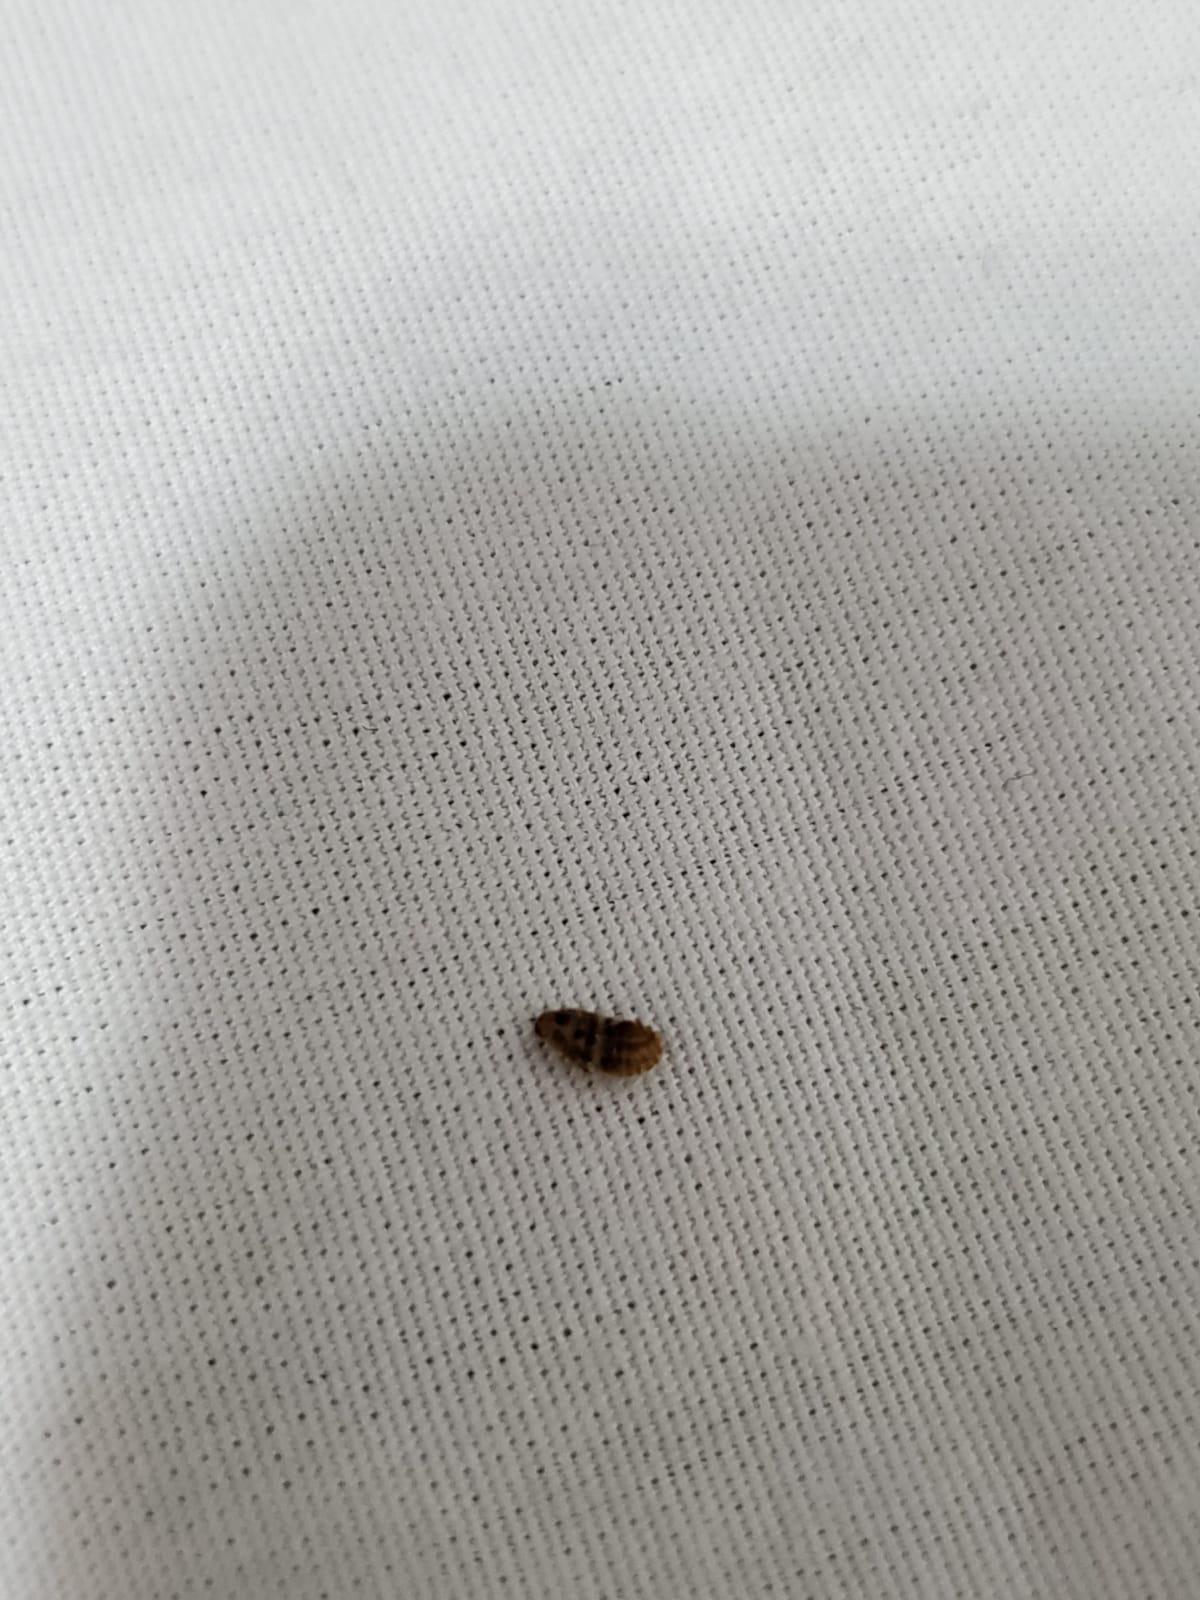 Bed Bug Cast Skins